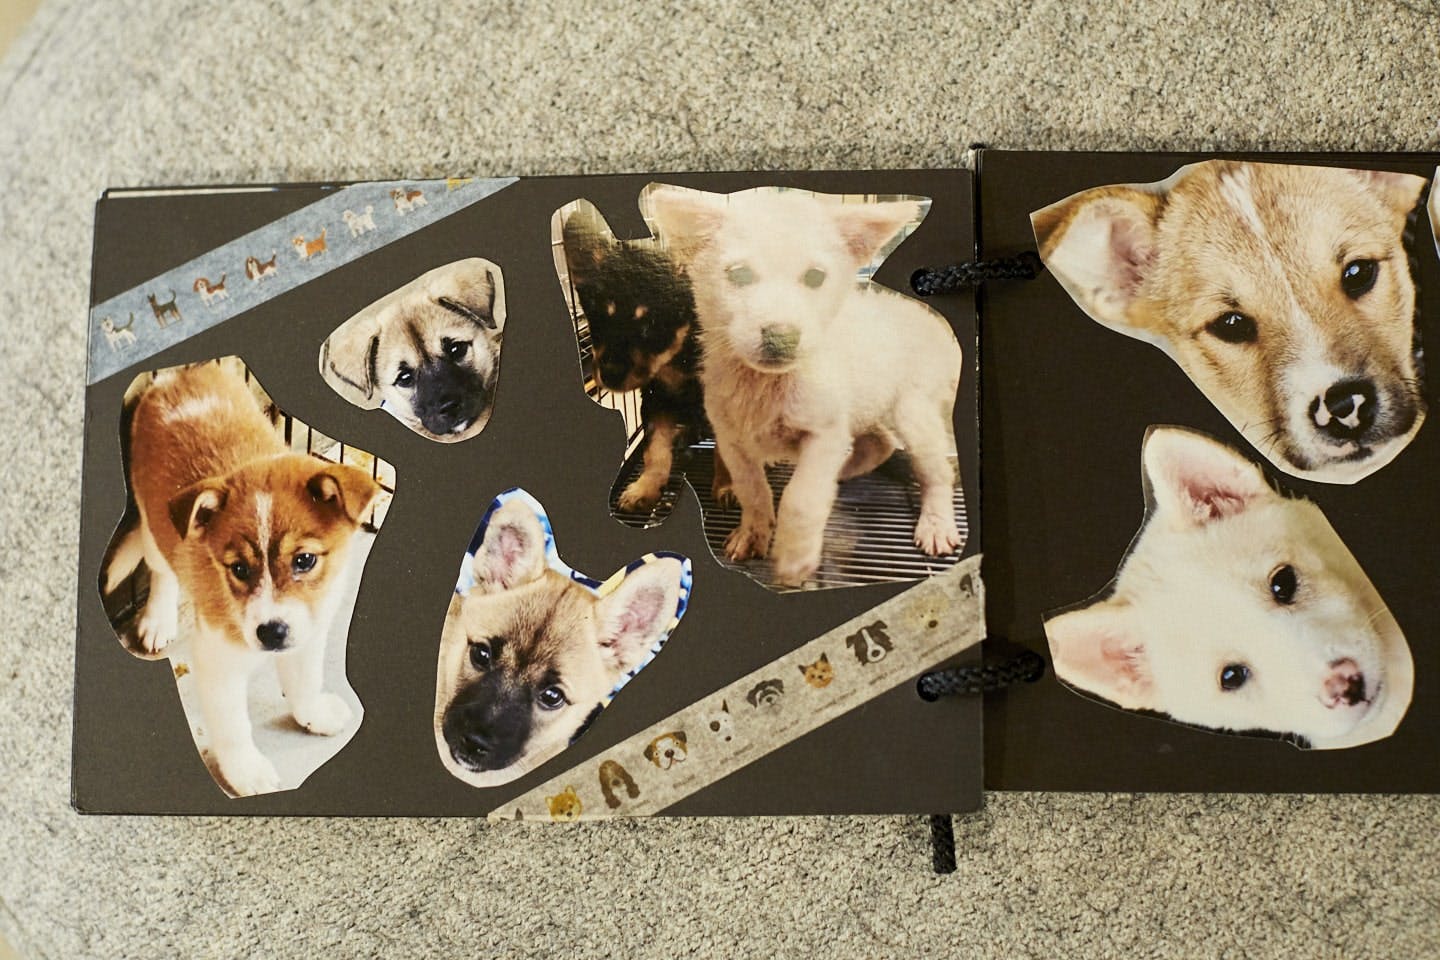 スペースに置かれたアルバムには、里親募集中の保護犬の写真や情報が載っており、それを見て寺田さん経由で引き取ることもできる。